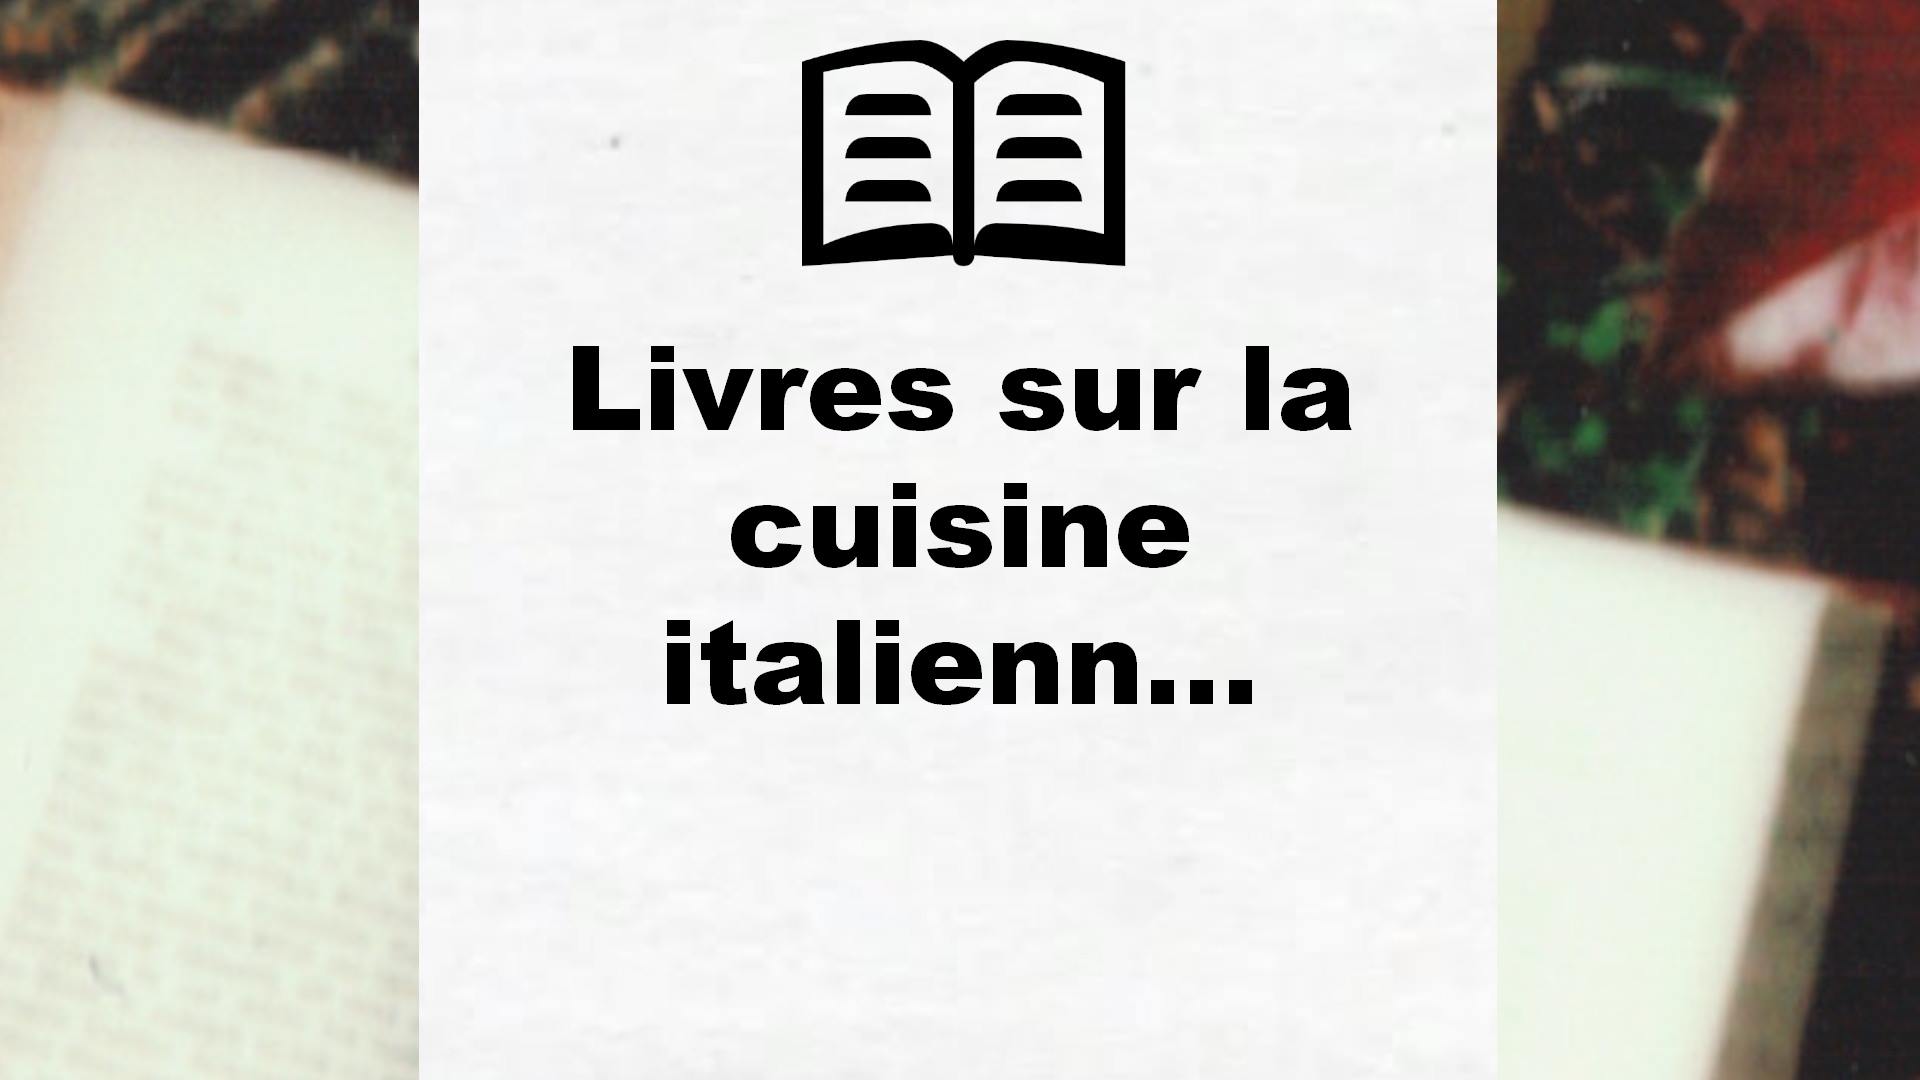 Livres sur la cuisine italienne